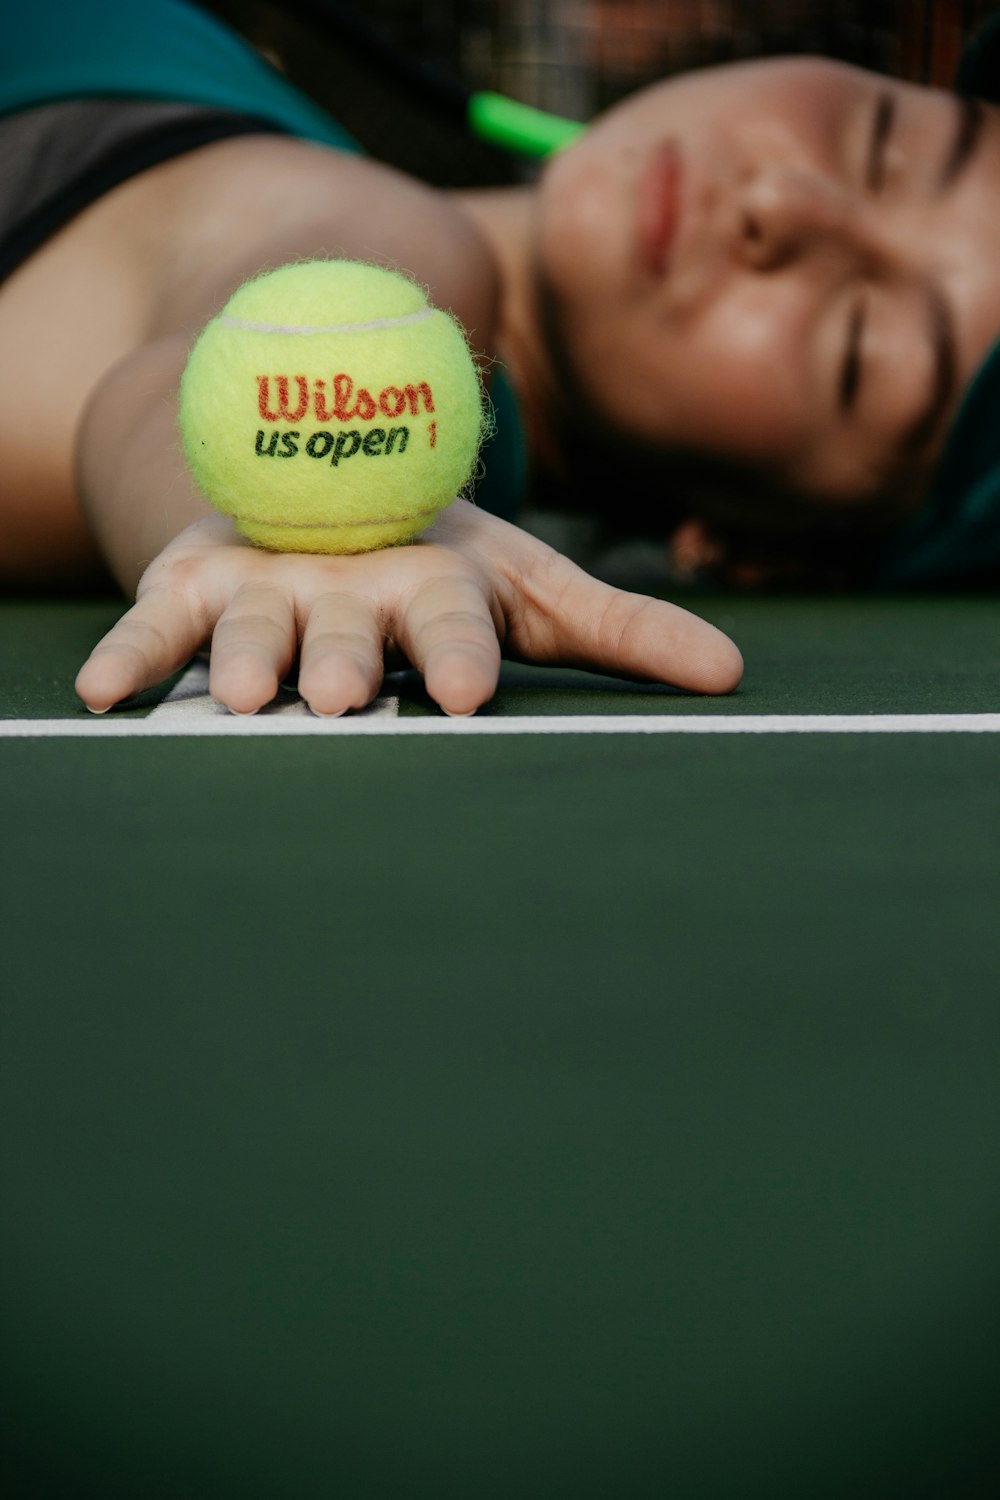 femme allongée sur le court de tennis tenant une balle Wilson verte